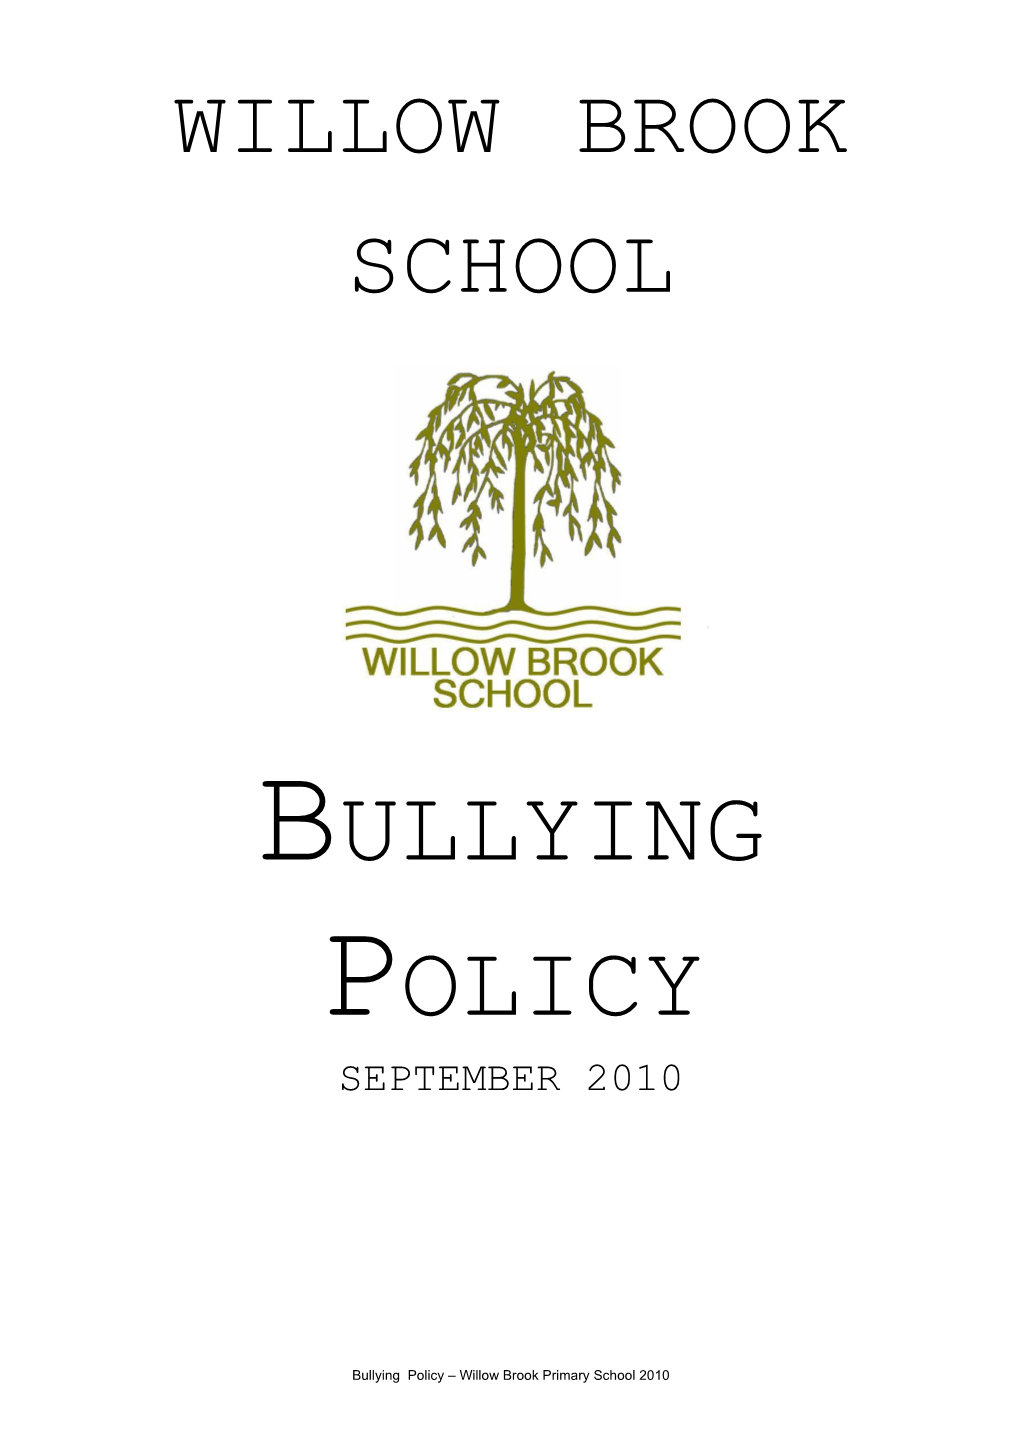 Willow Brook School